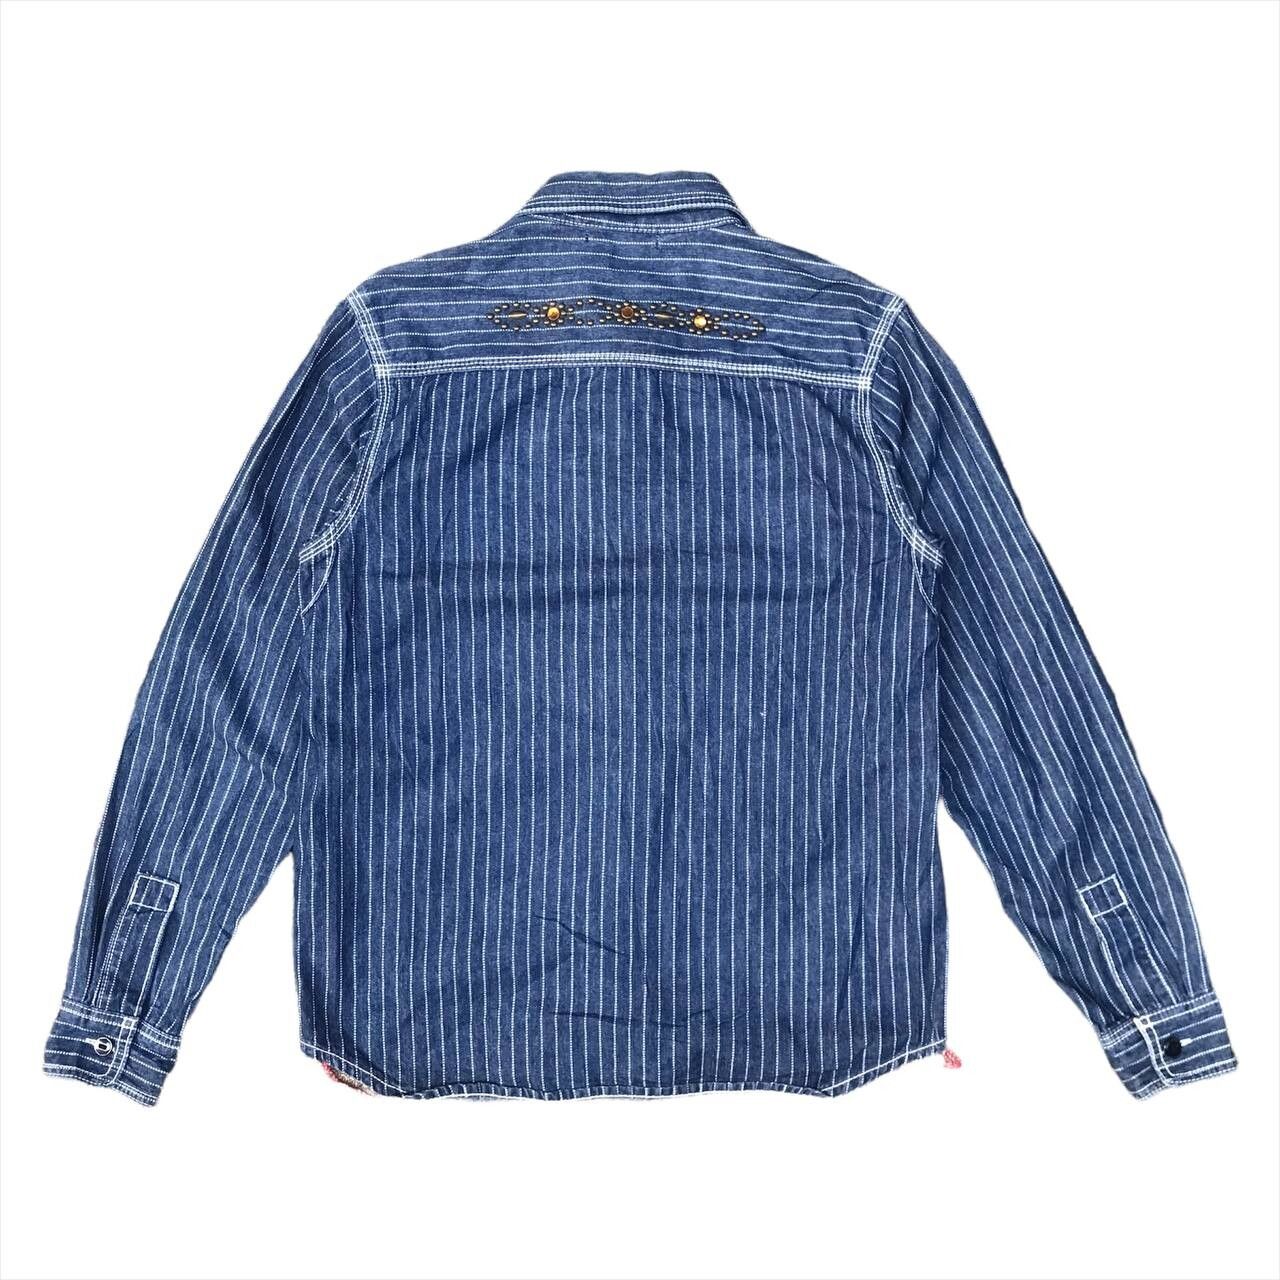 Engineered Garments Japanese Brand Wabash Shirt Studs Gemstone Kapital Style Size US M / EU 48-50 / 2 - 3 Thumbnail